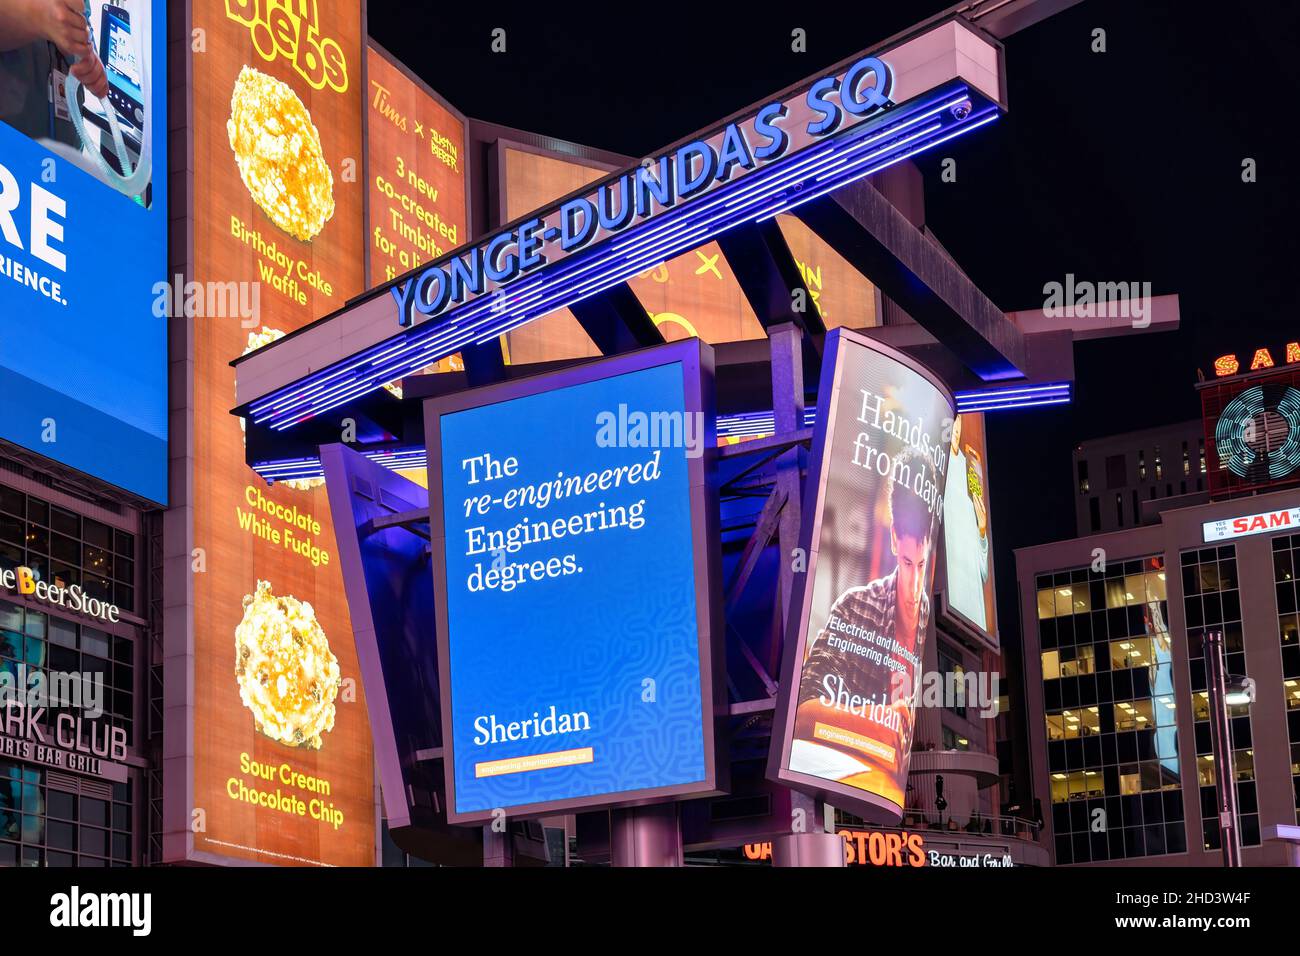 Une publicité du collège Sheridan dans la place Yonge-Dundas la nuit.L'endroit est une attraction touristique dans la ville.3 janvier 2022 Banque D'Images